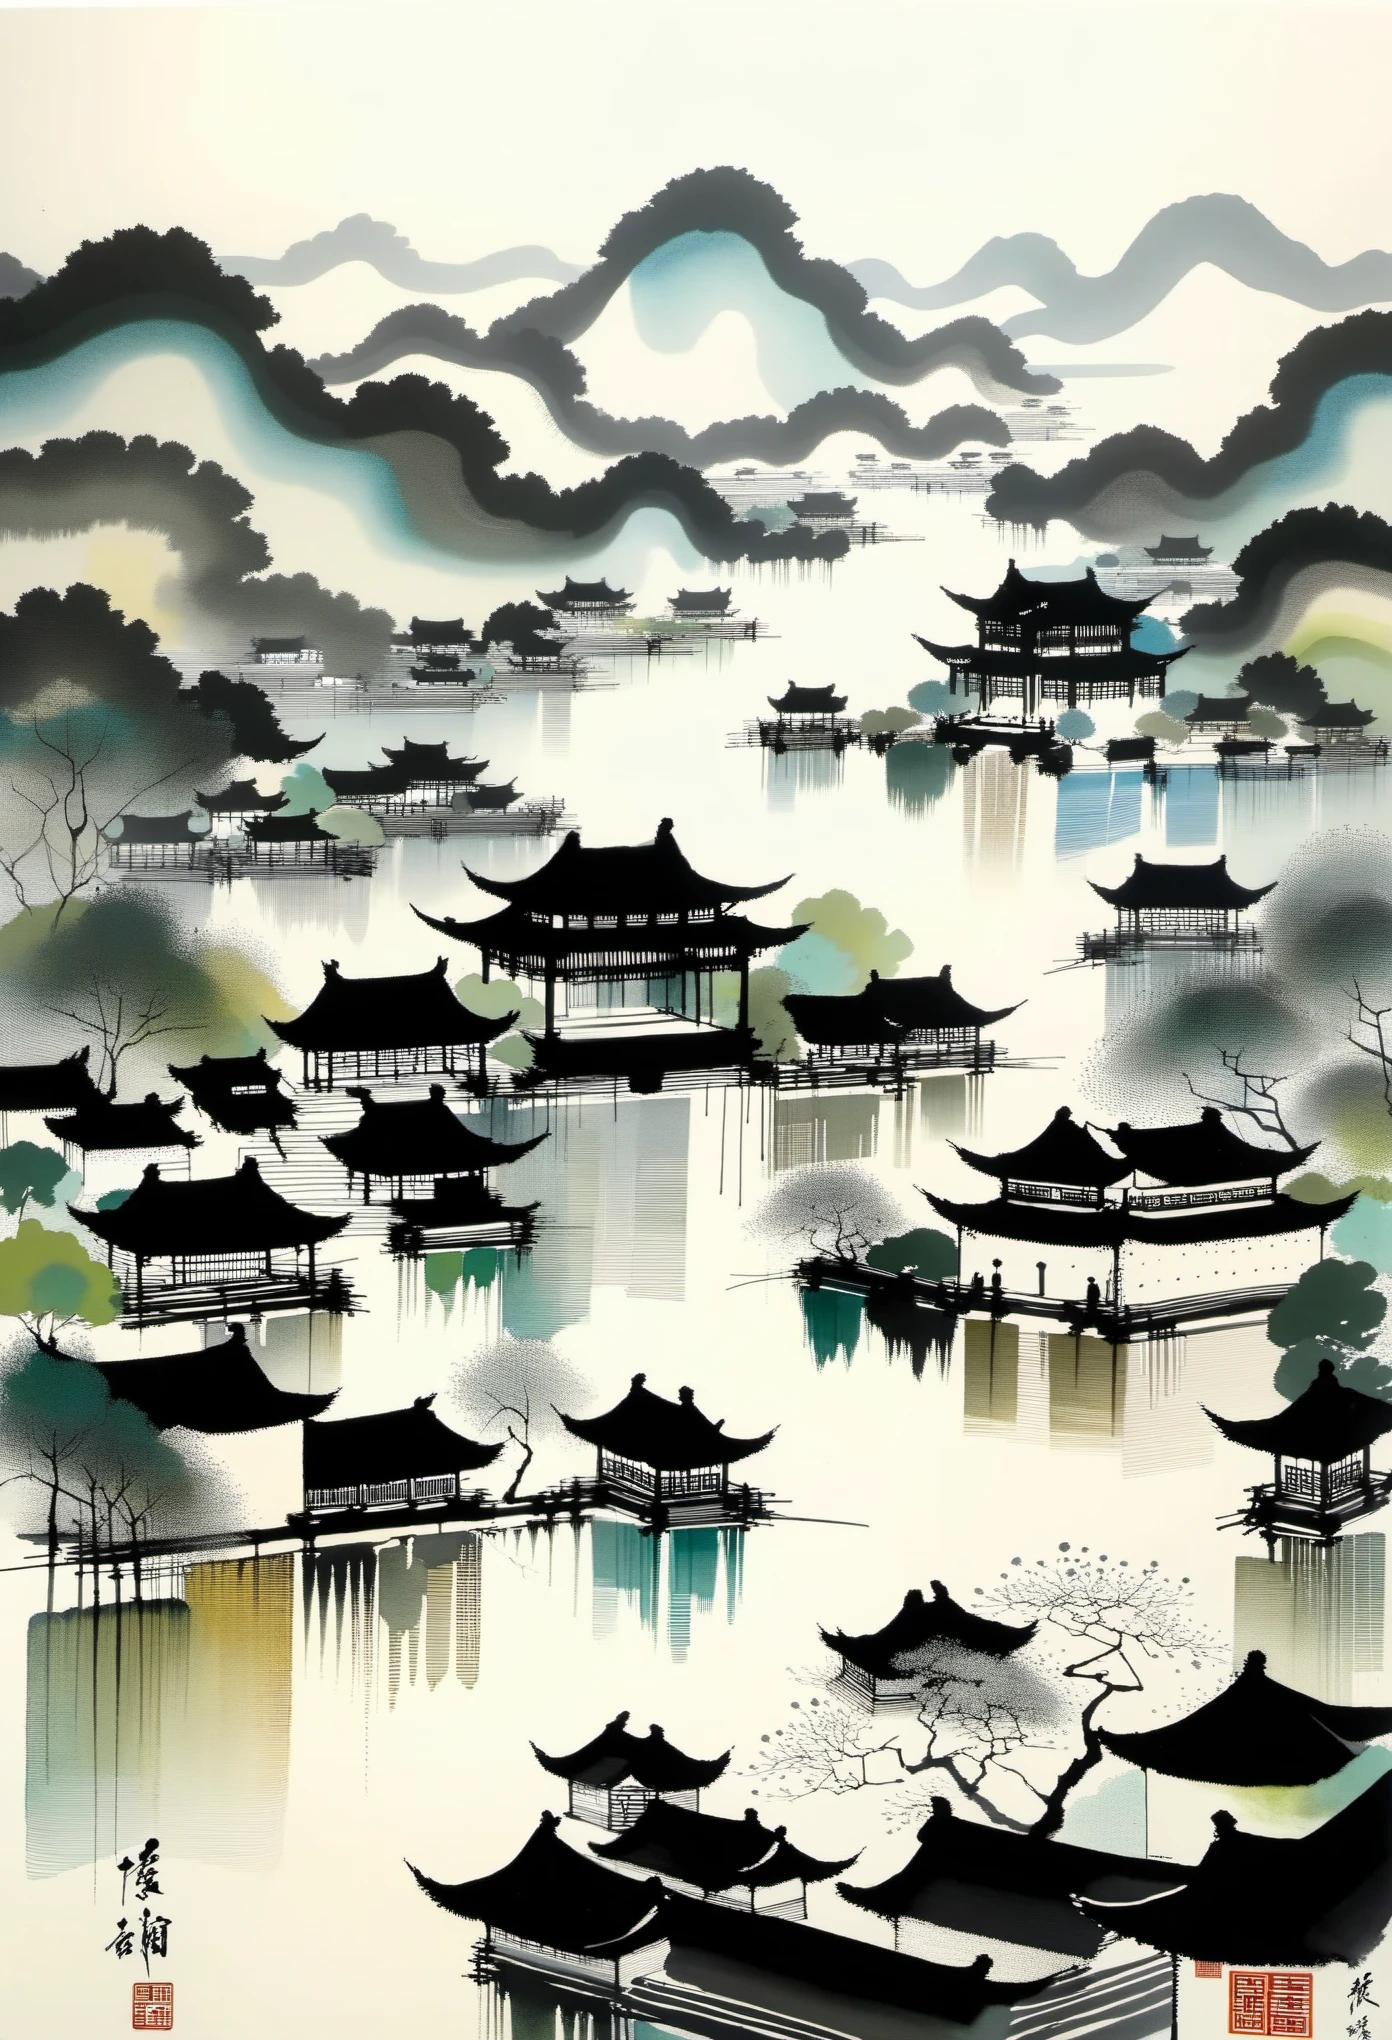 几何抽象水墨，描述江南园林建筑群，吴冠中的风格是将中国传统水墨技法与西方绘画理念相融合的艺术表达. 它的特点是对传统主题的现代诠释, 通过色彩和线条创造独特的视觉效果.